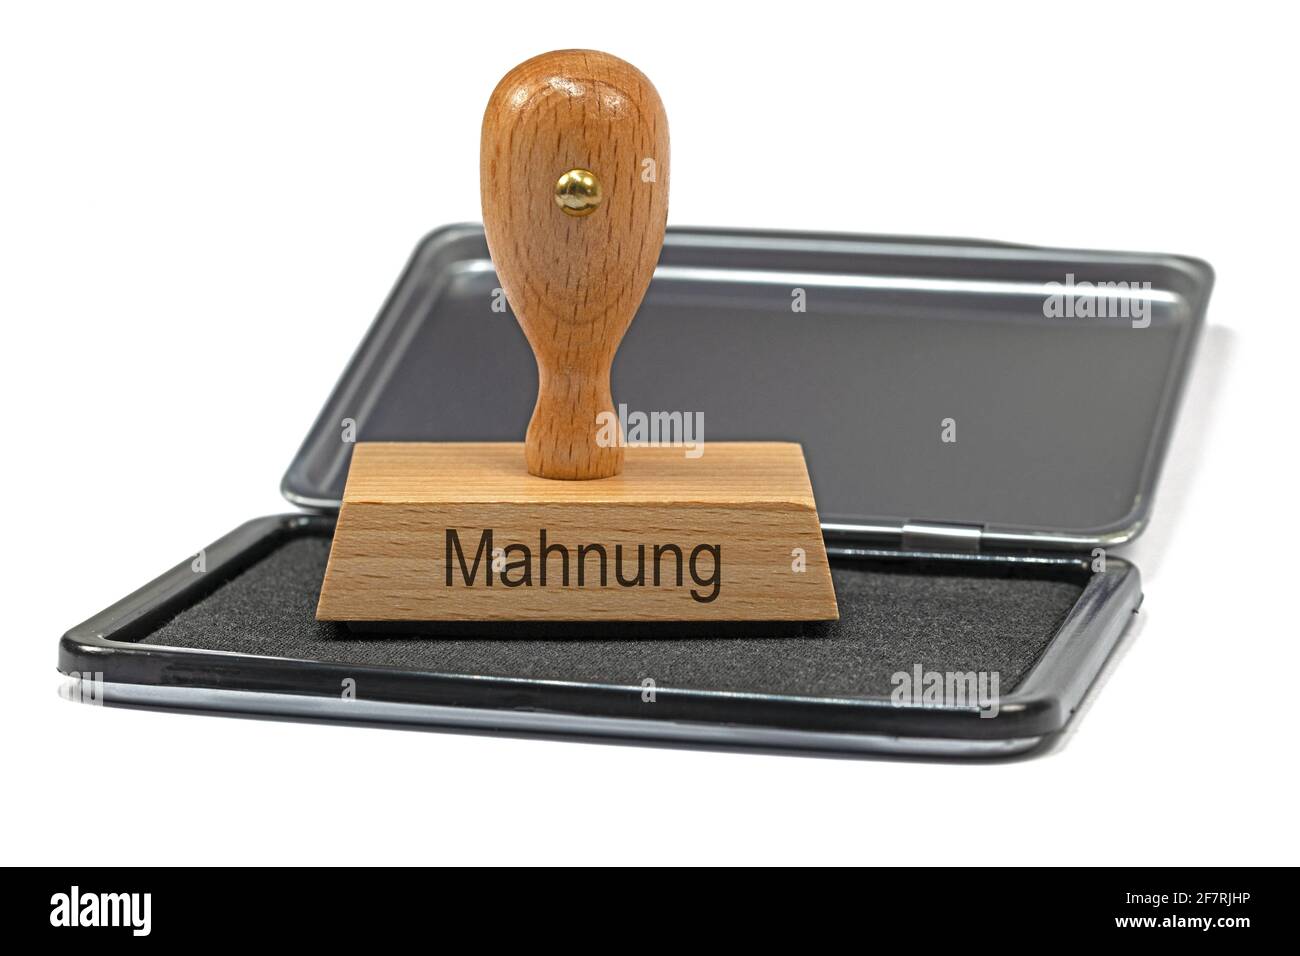 Francobollo in legno con l'iscrizione "Mahnung", traduzione "Promemoria" Foto Stock